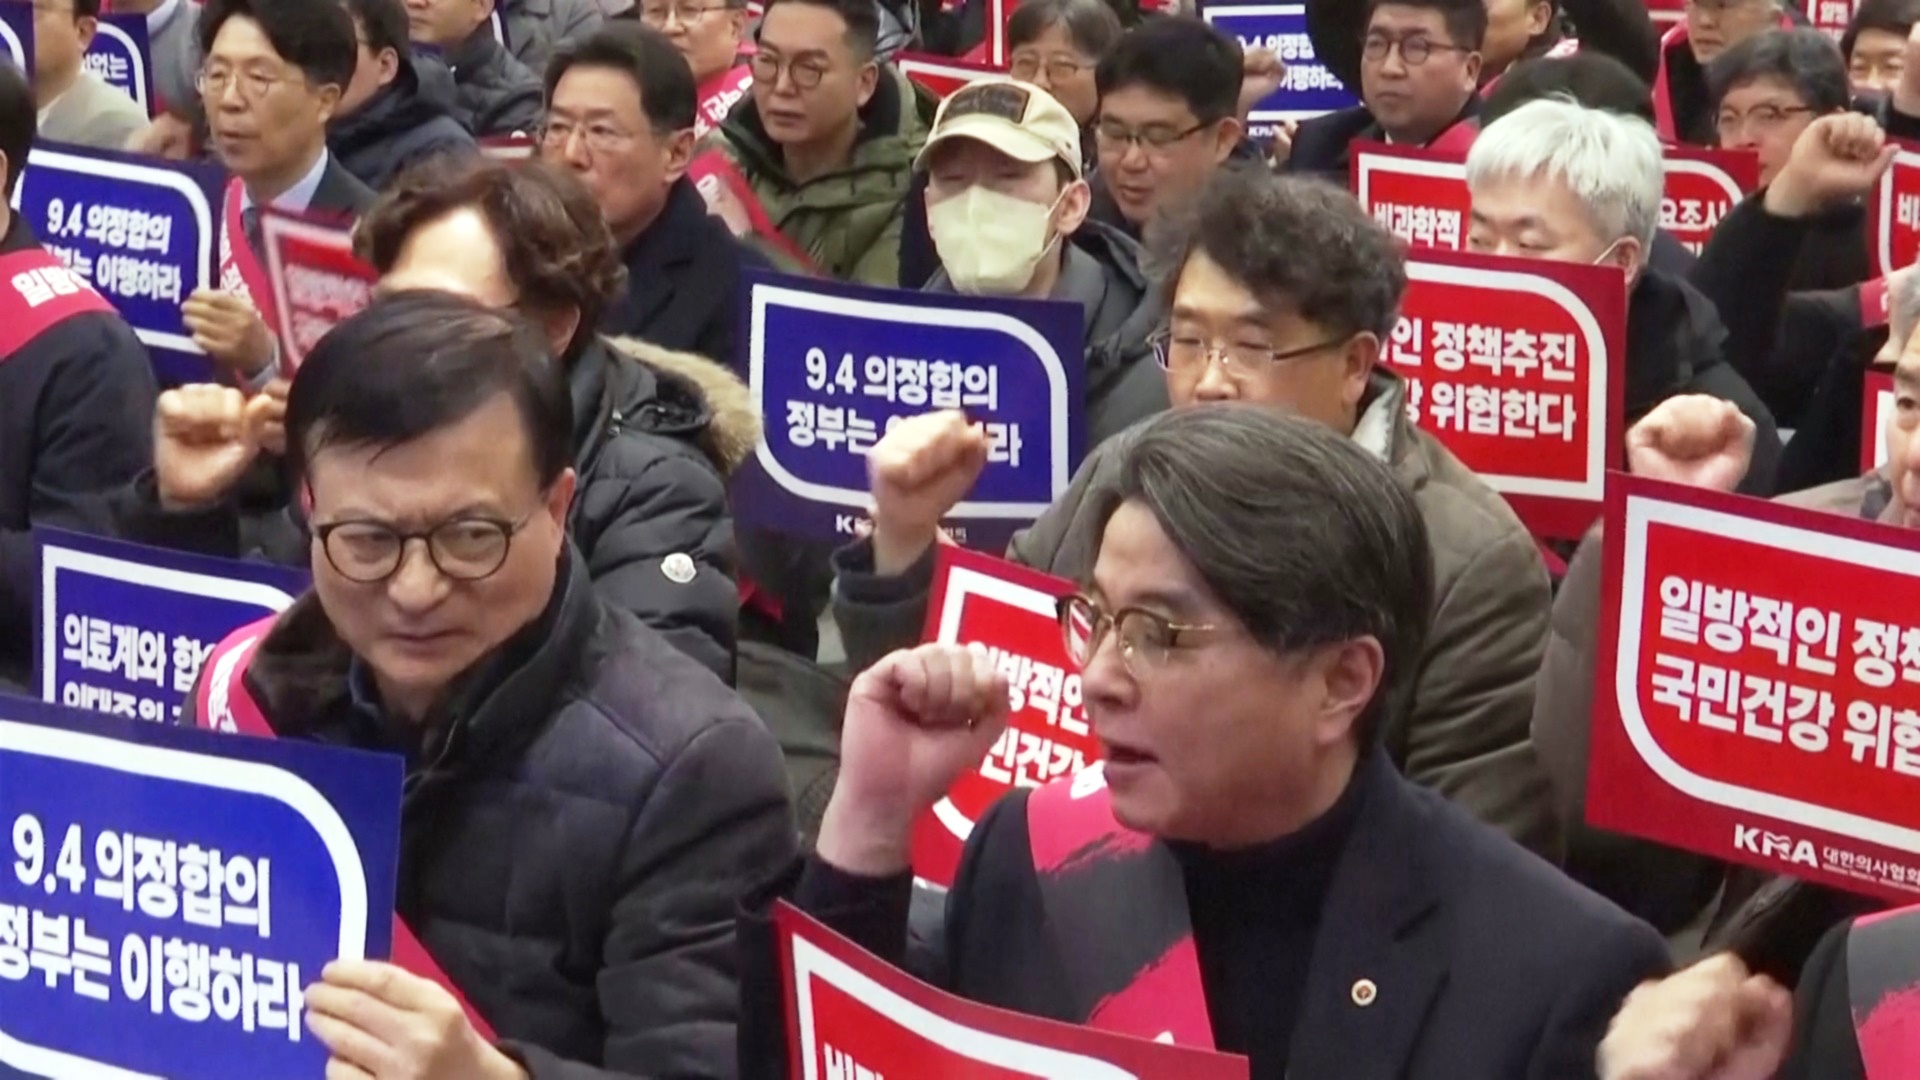 От бастующих врачей в Южной Корее потребовали вернуться на работу до марта